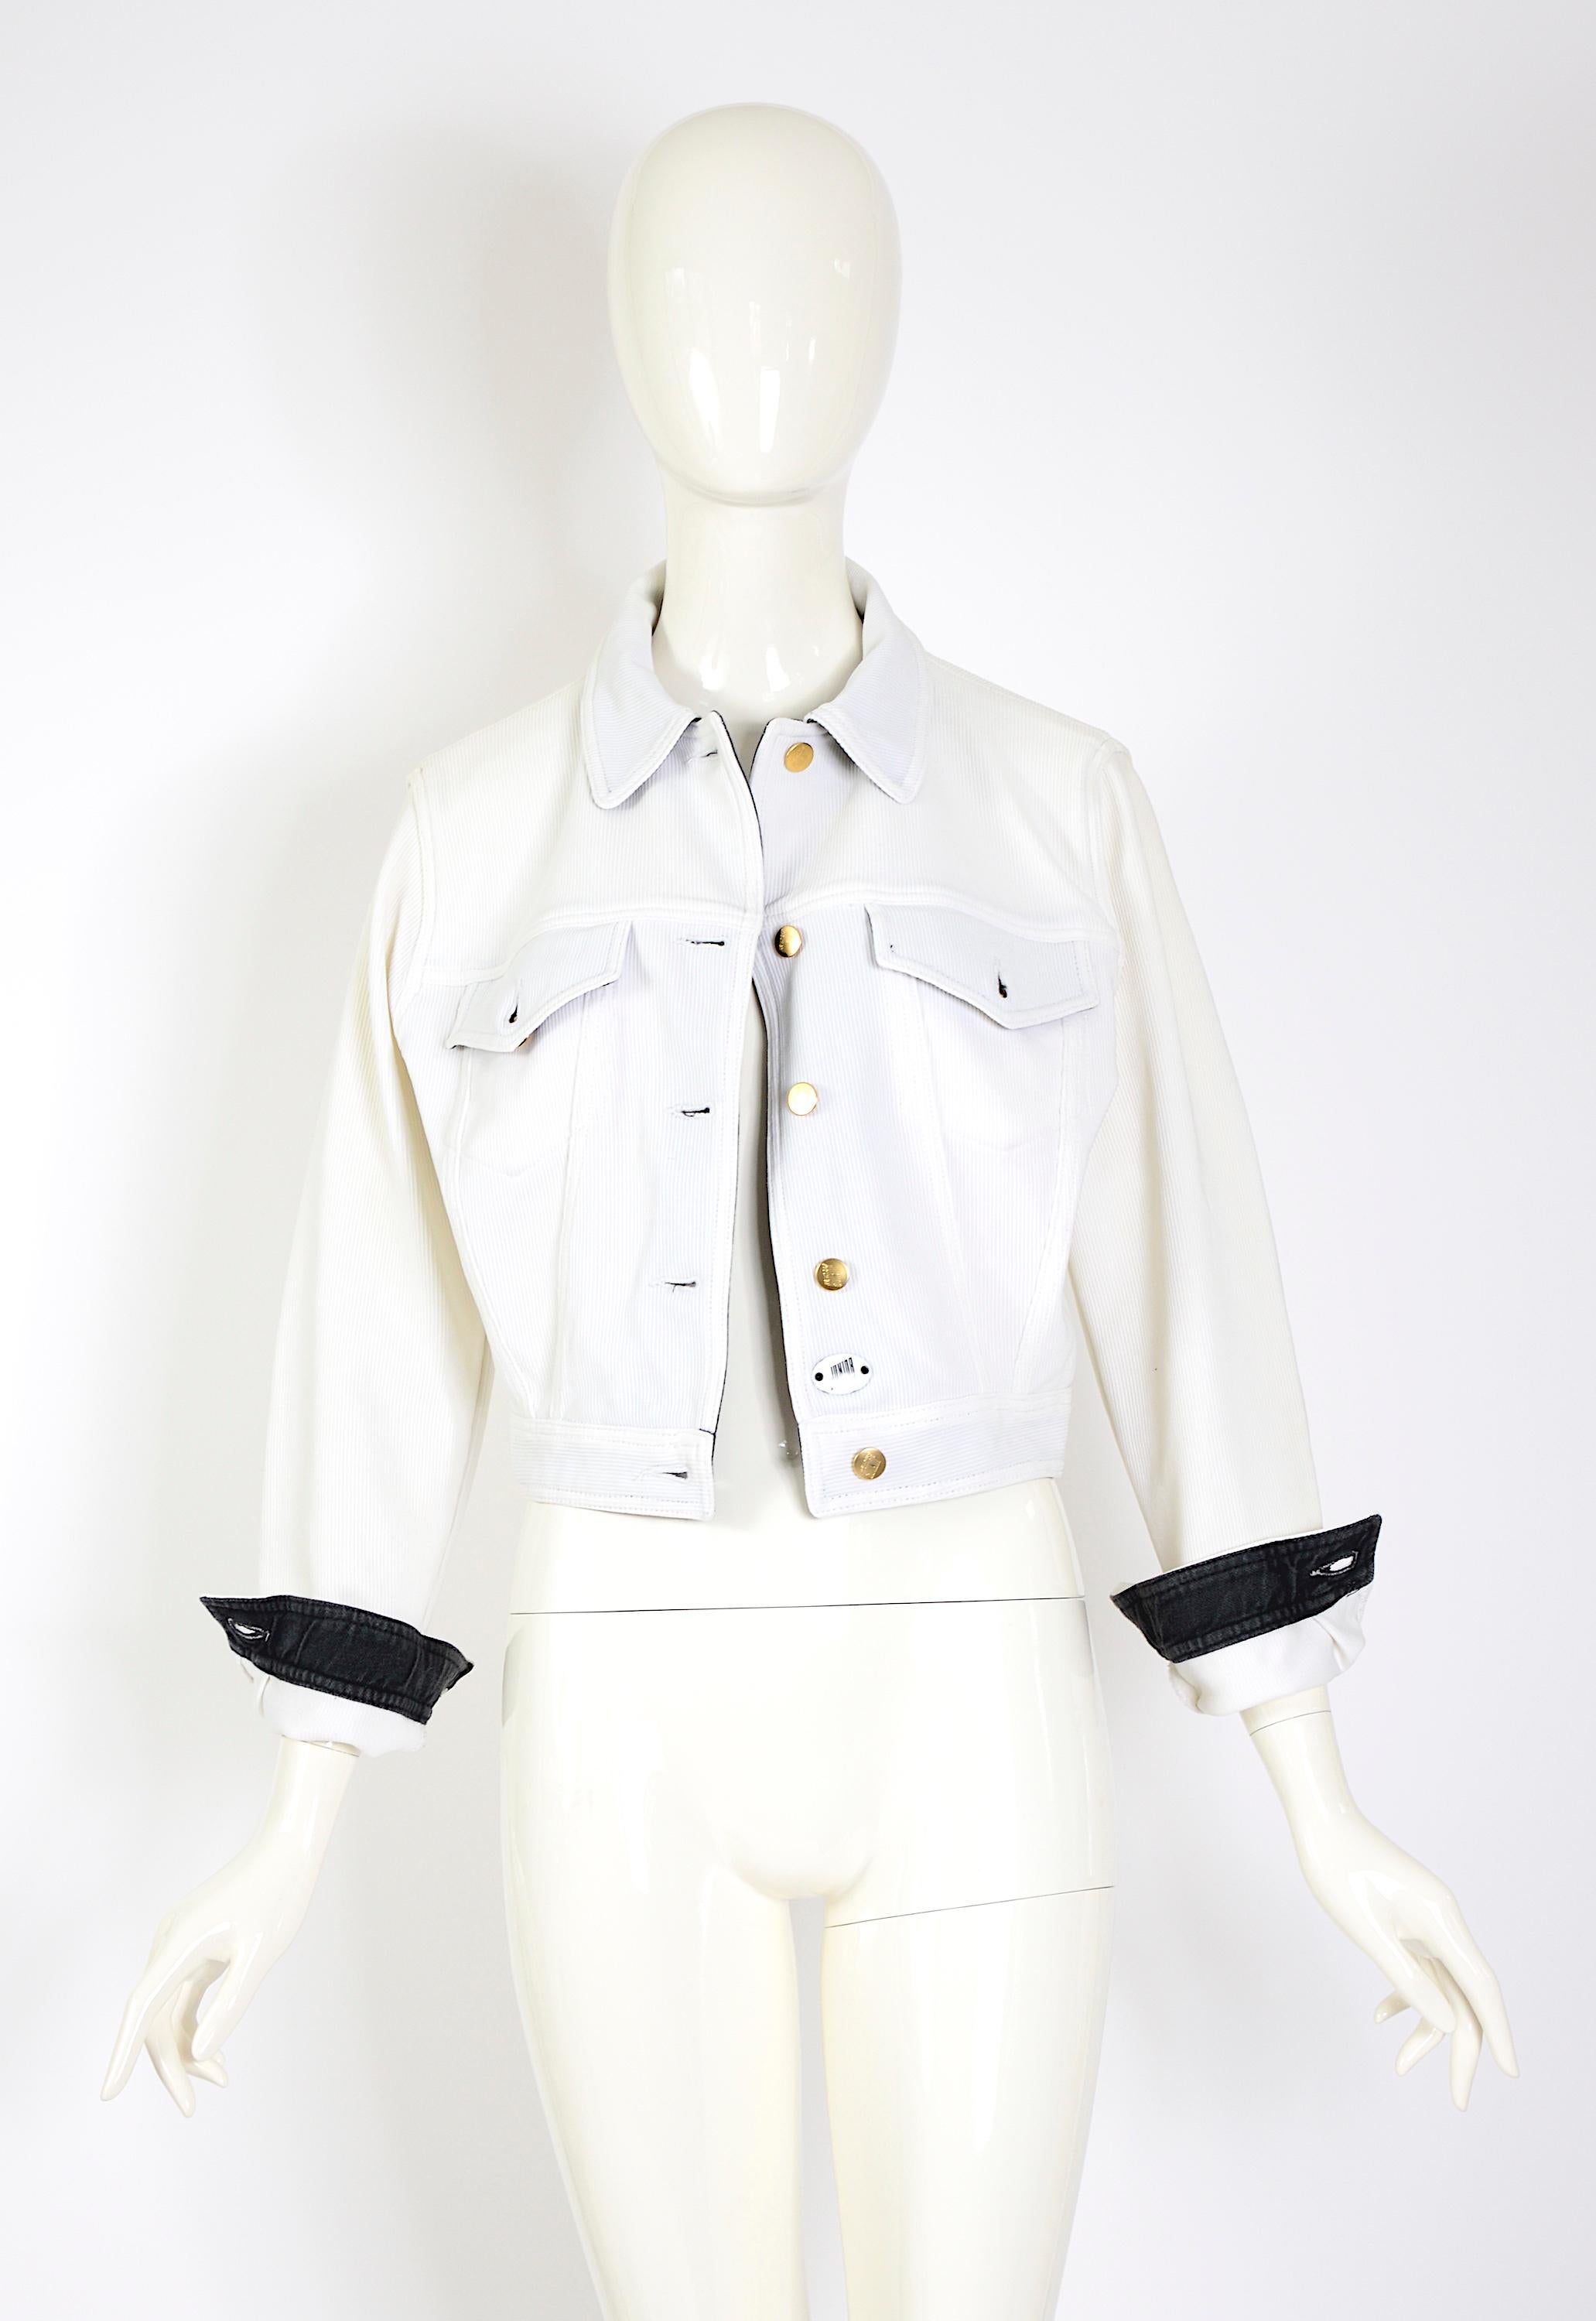 Jean-Paul Gaultier junior S/S 1988 weiße gerippte dokumentierte Jacke, wie an Model/Schauspielerin Talisa Soto gesehen.
Das Design dieser Jacke ist ein zeitloses Stück, das häufig in den kultigen Kollektionen von Jean Paul Gaultier zu finden ist.